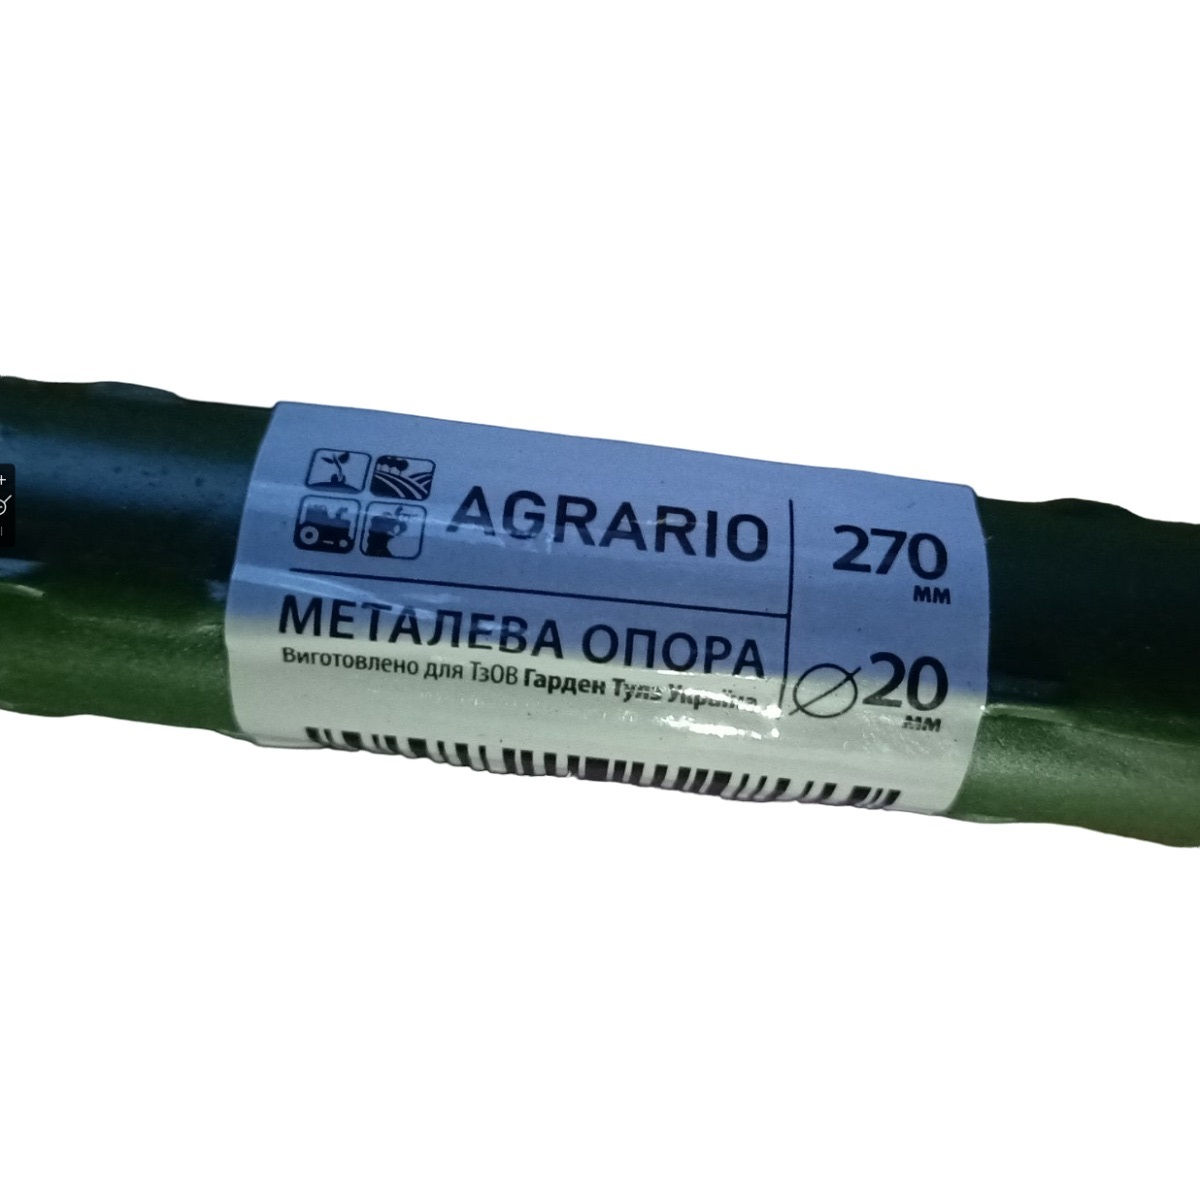 Металева опора для рослин Agrario 16-210 з пластиковим покриттям 16 мм х 2,1 м / Аграріо 16-210